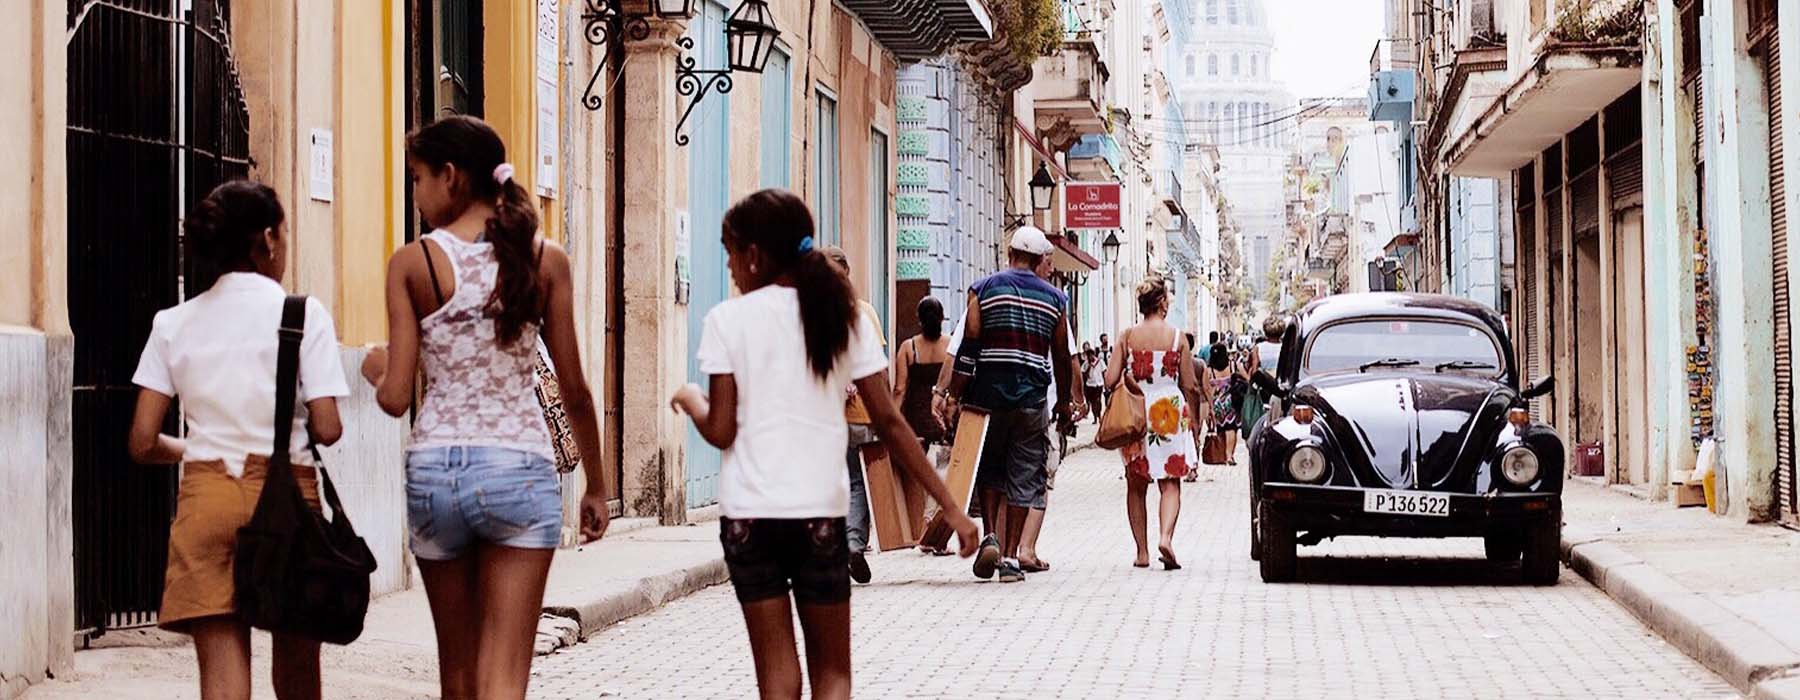 Cuba<br class="hidden-md hidden-lg" /> Cultural Holidays